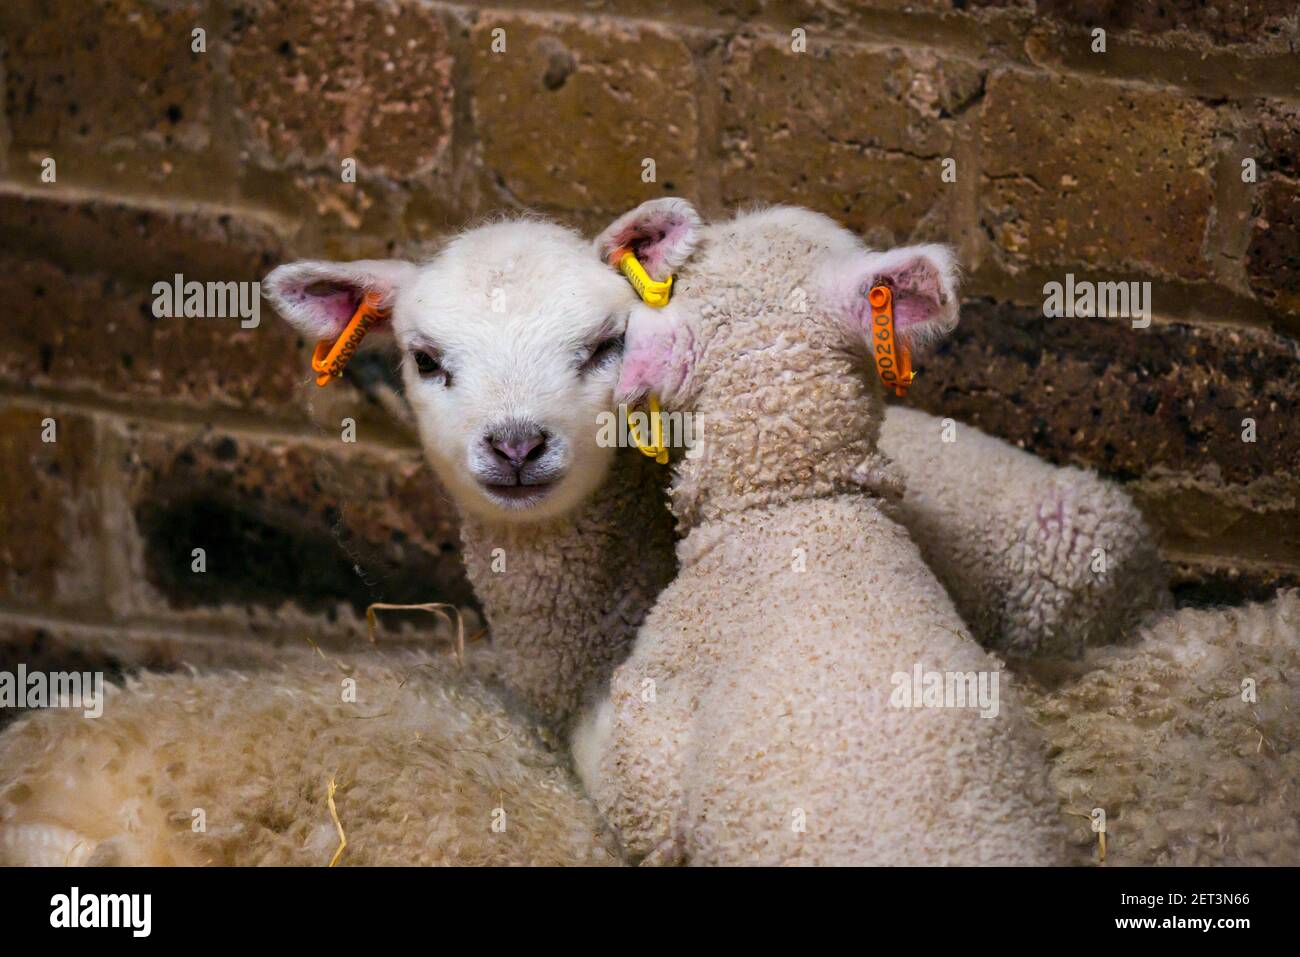 Mignon nouveau-né mouton Shetland jumeaux d'agneau couché sur la brebis mère dans la grange, Ecosse, Royaume-Uni Banque D'Images